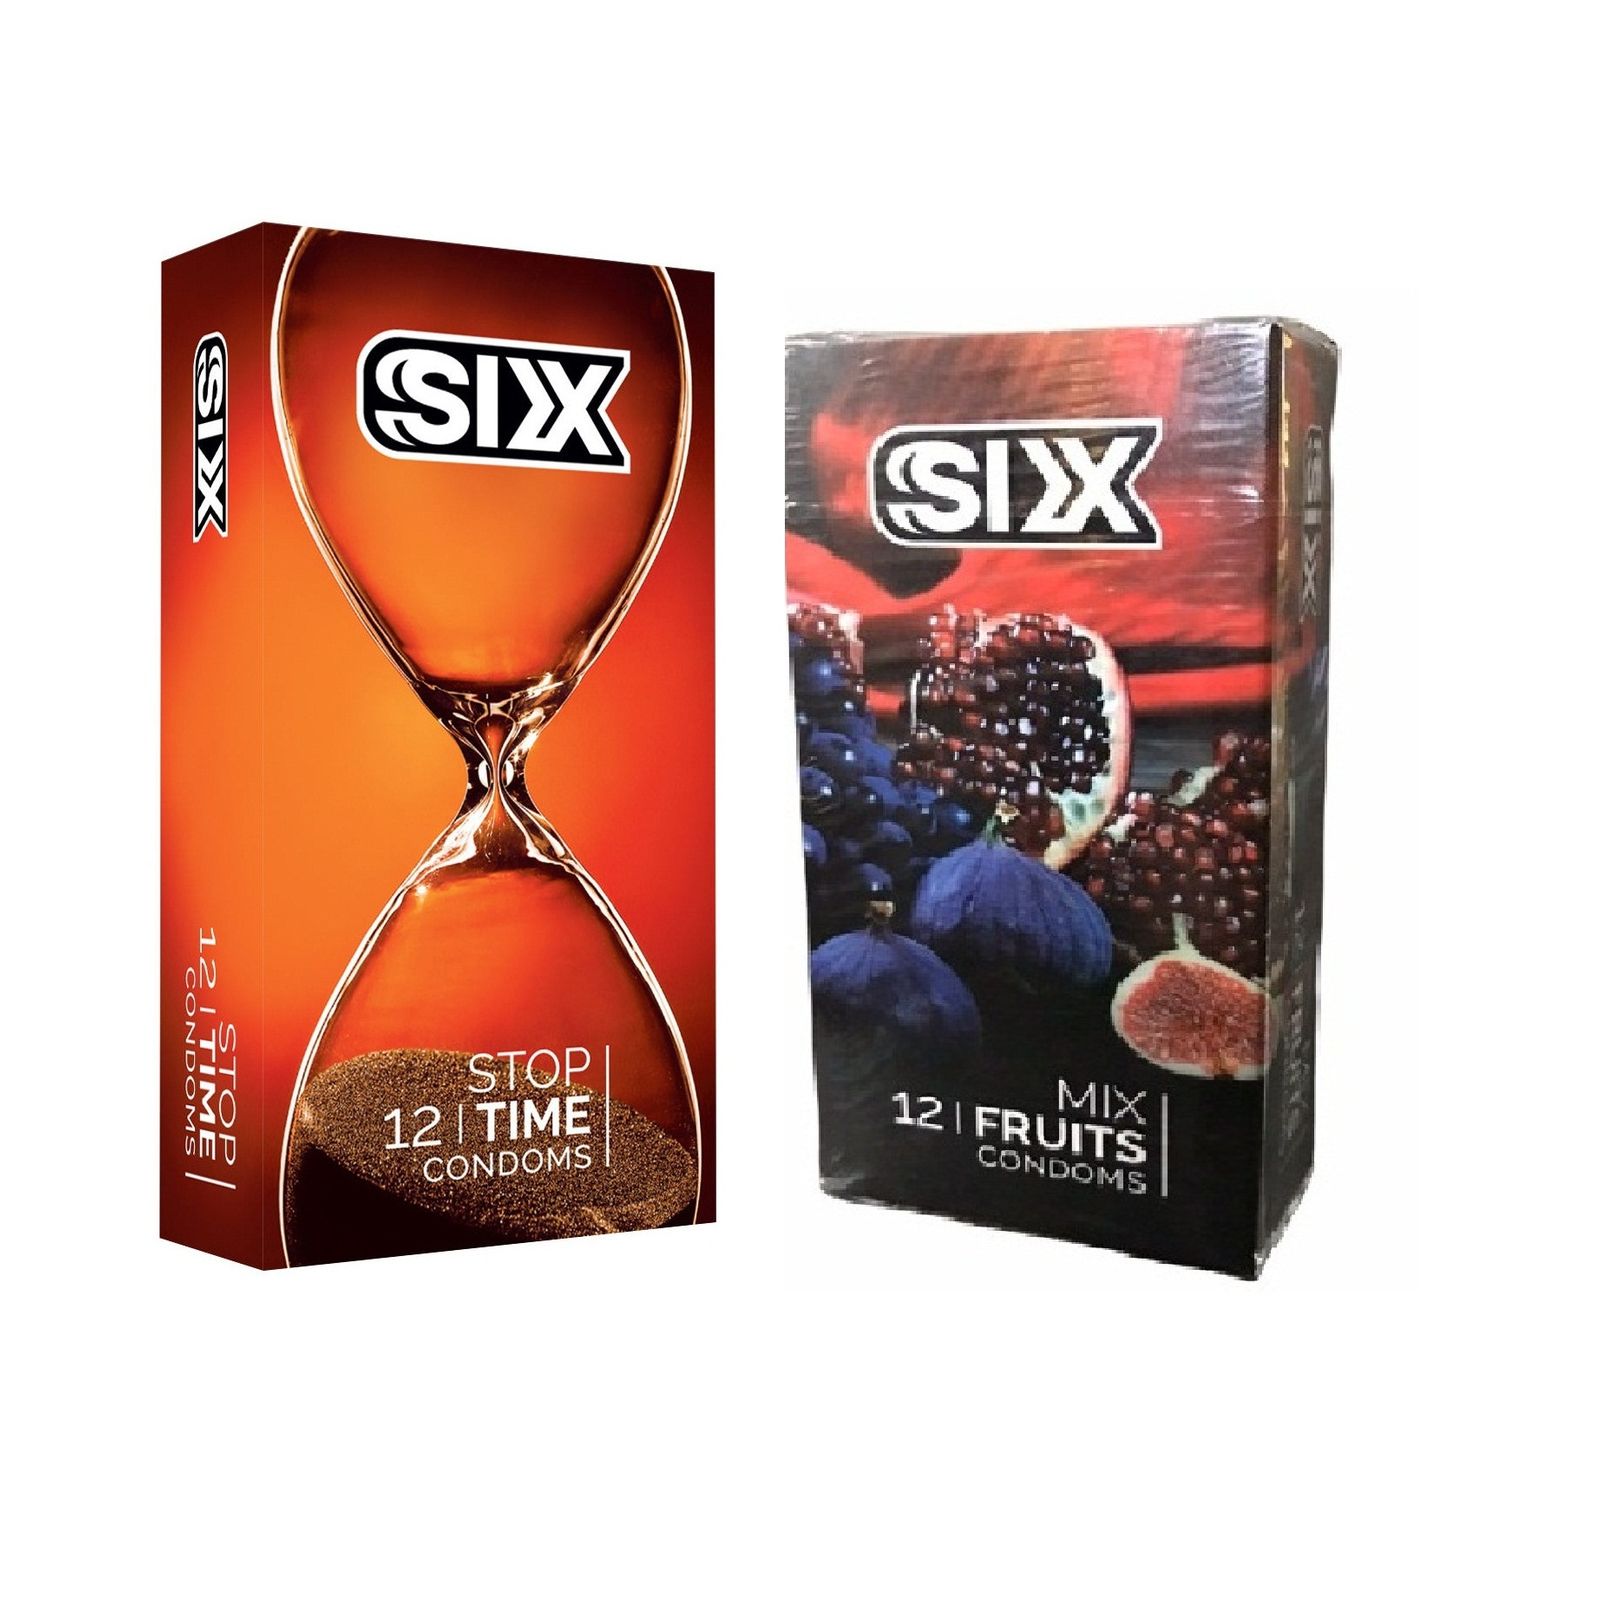 کاندوم سیکس مدل Stop Time بسته 12 عددی به همراه کاندوم سیکس مدل Mix Fruits بسته 12 عددی -  - 1